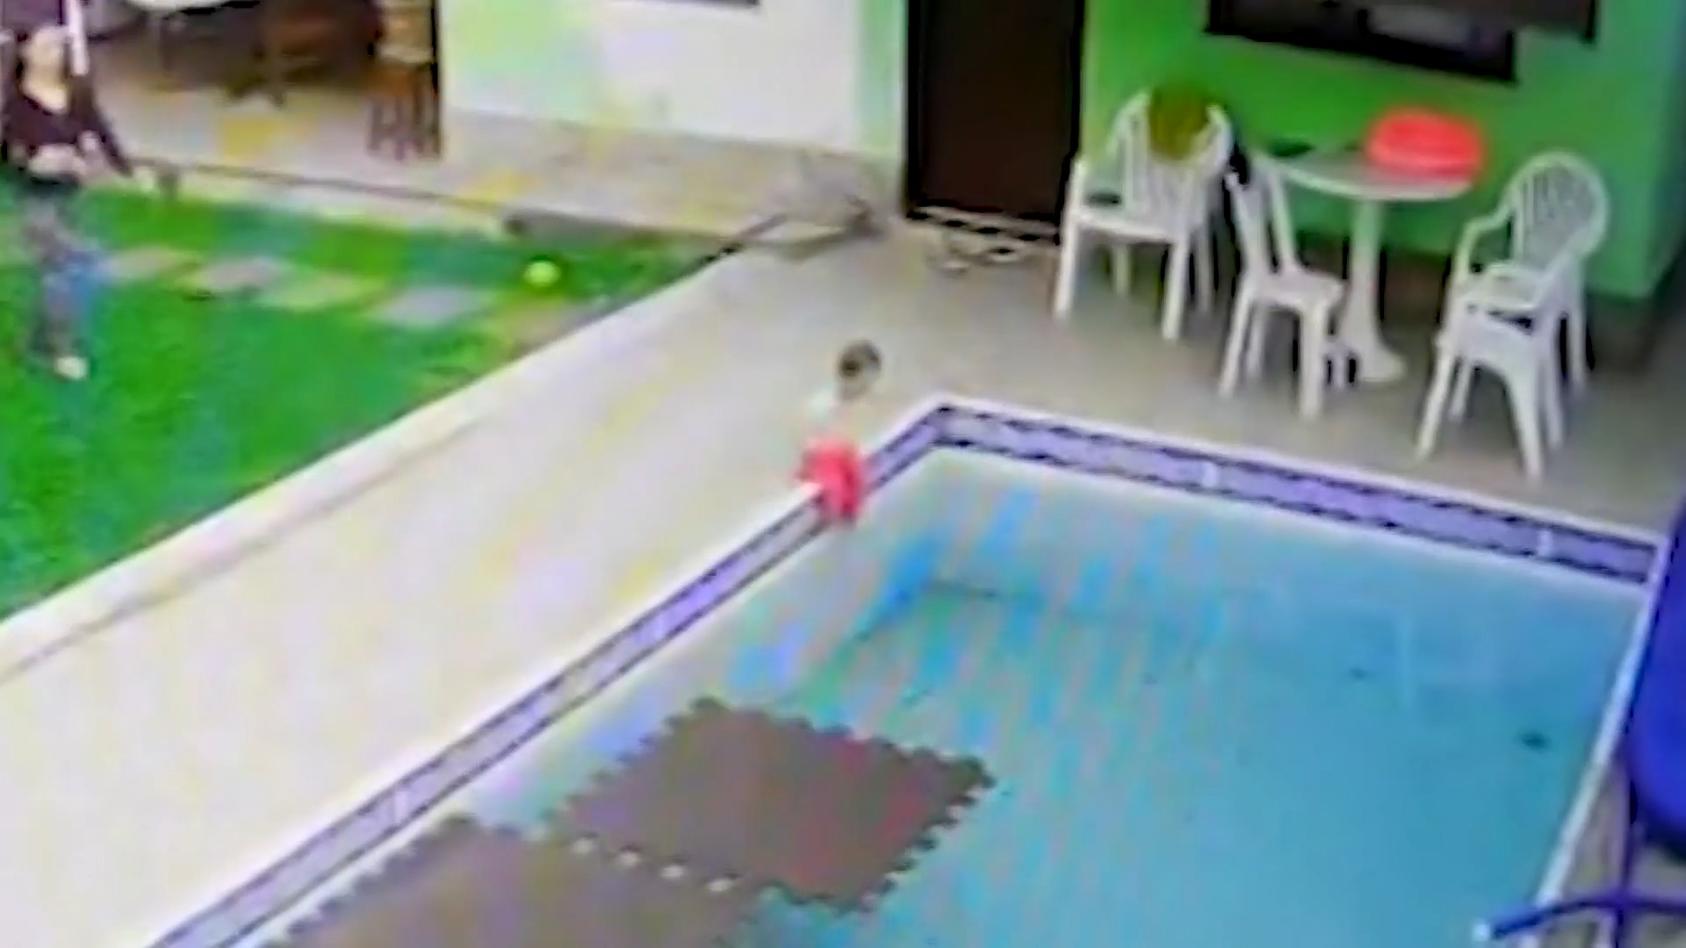 Kleinkind fällt in Pool - Mutter reagiert blitzschnell Schock-Moment für Eltern